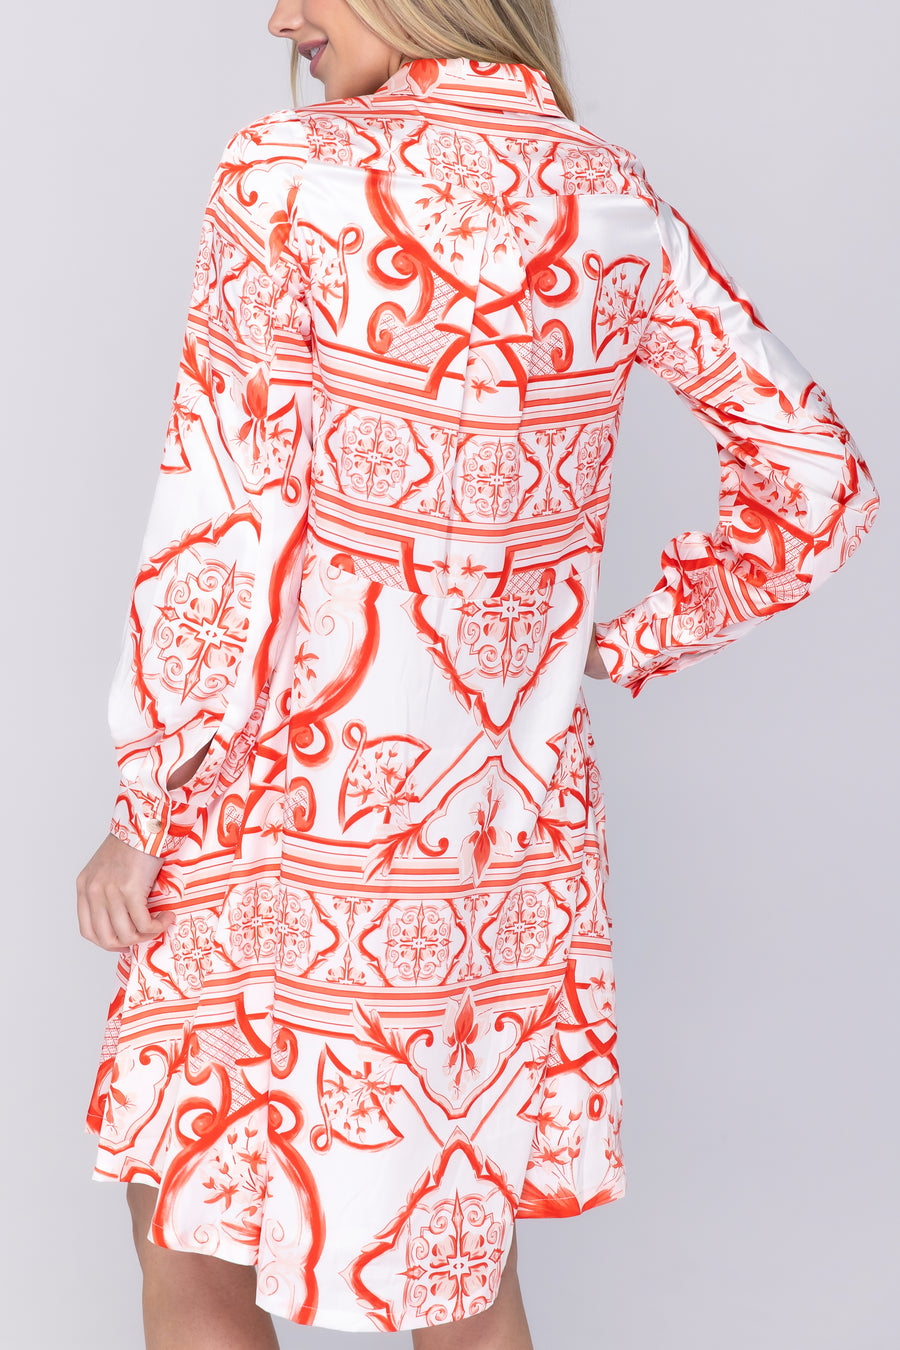 ALINA DRESS (WHITE/RED) 38"